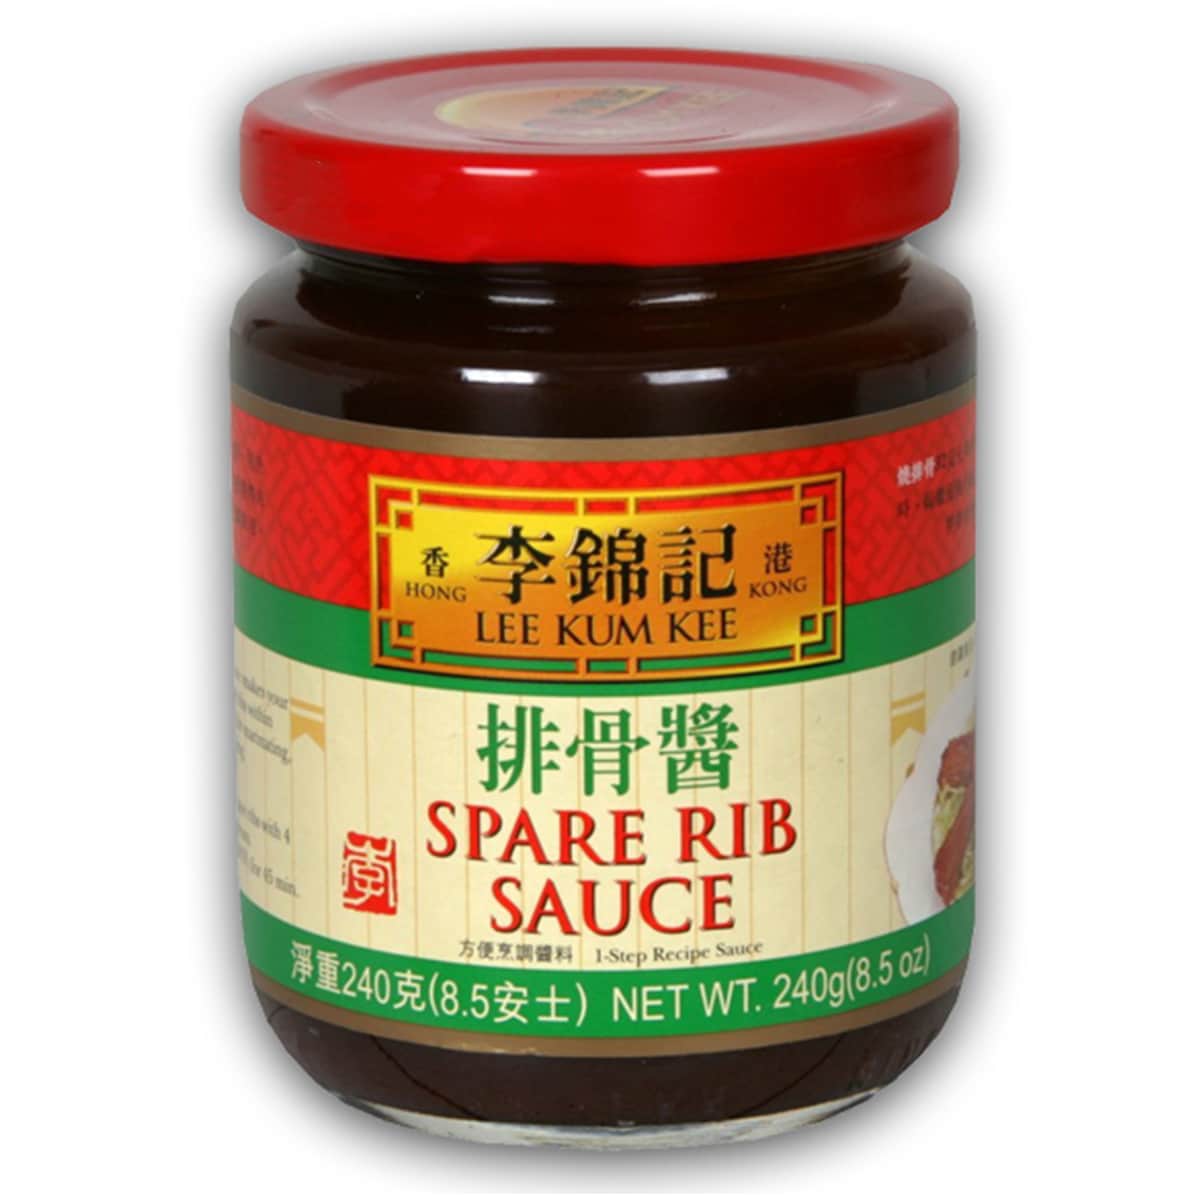 Buy Lee Kum Kee Spare Rib Sauce - 240 gm